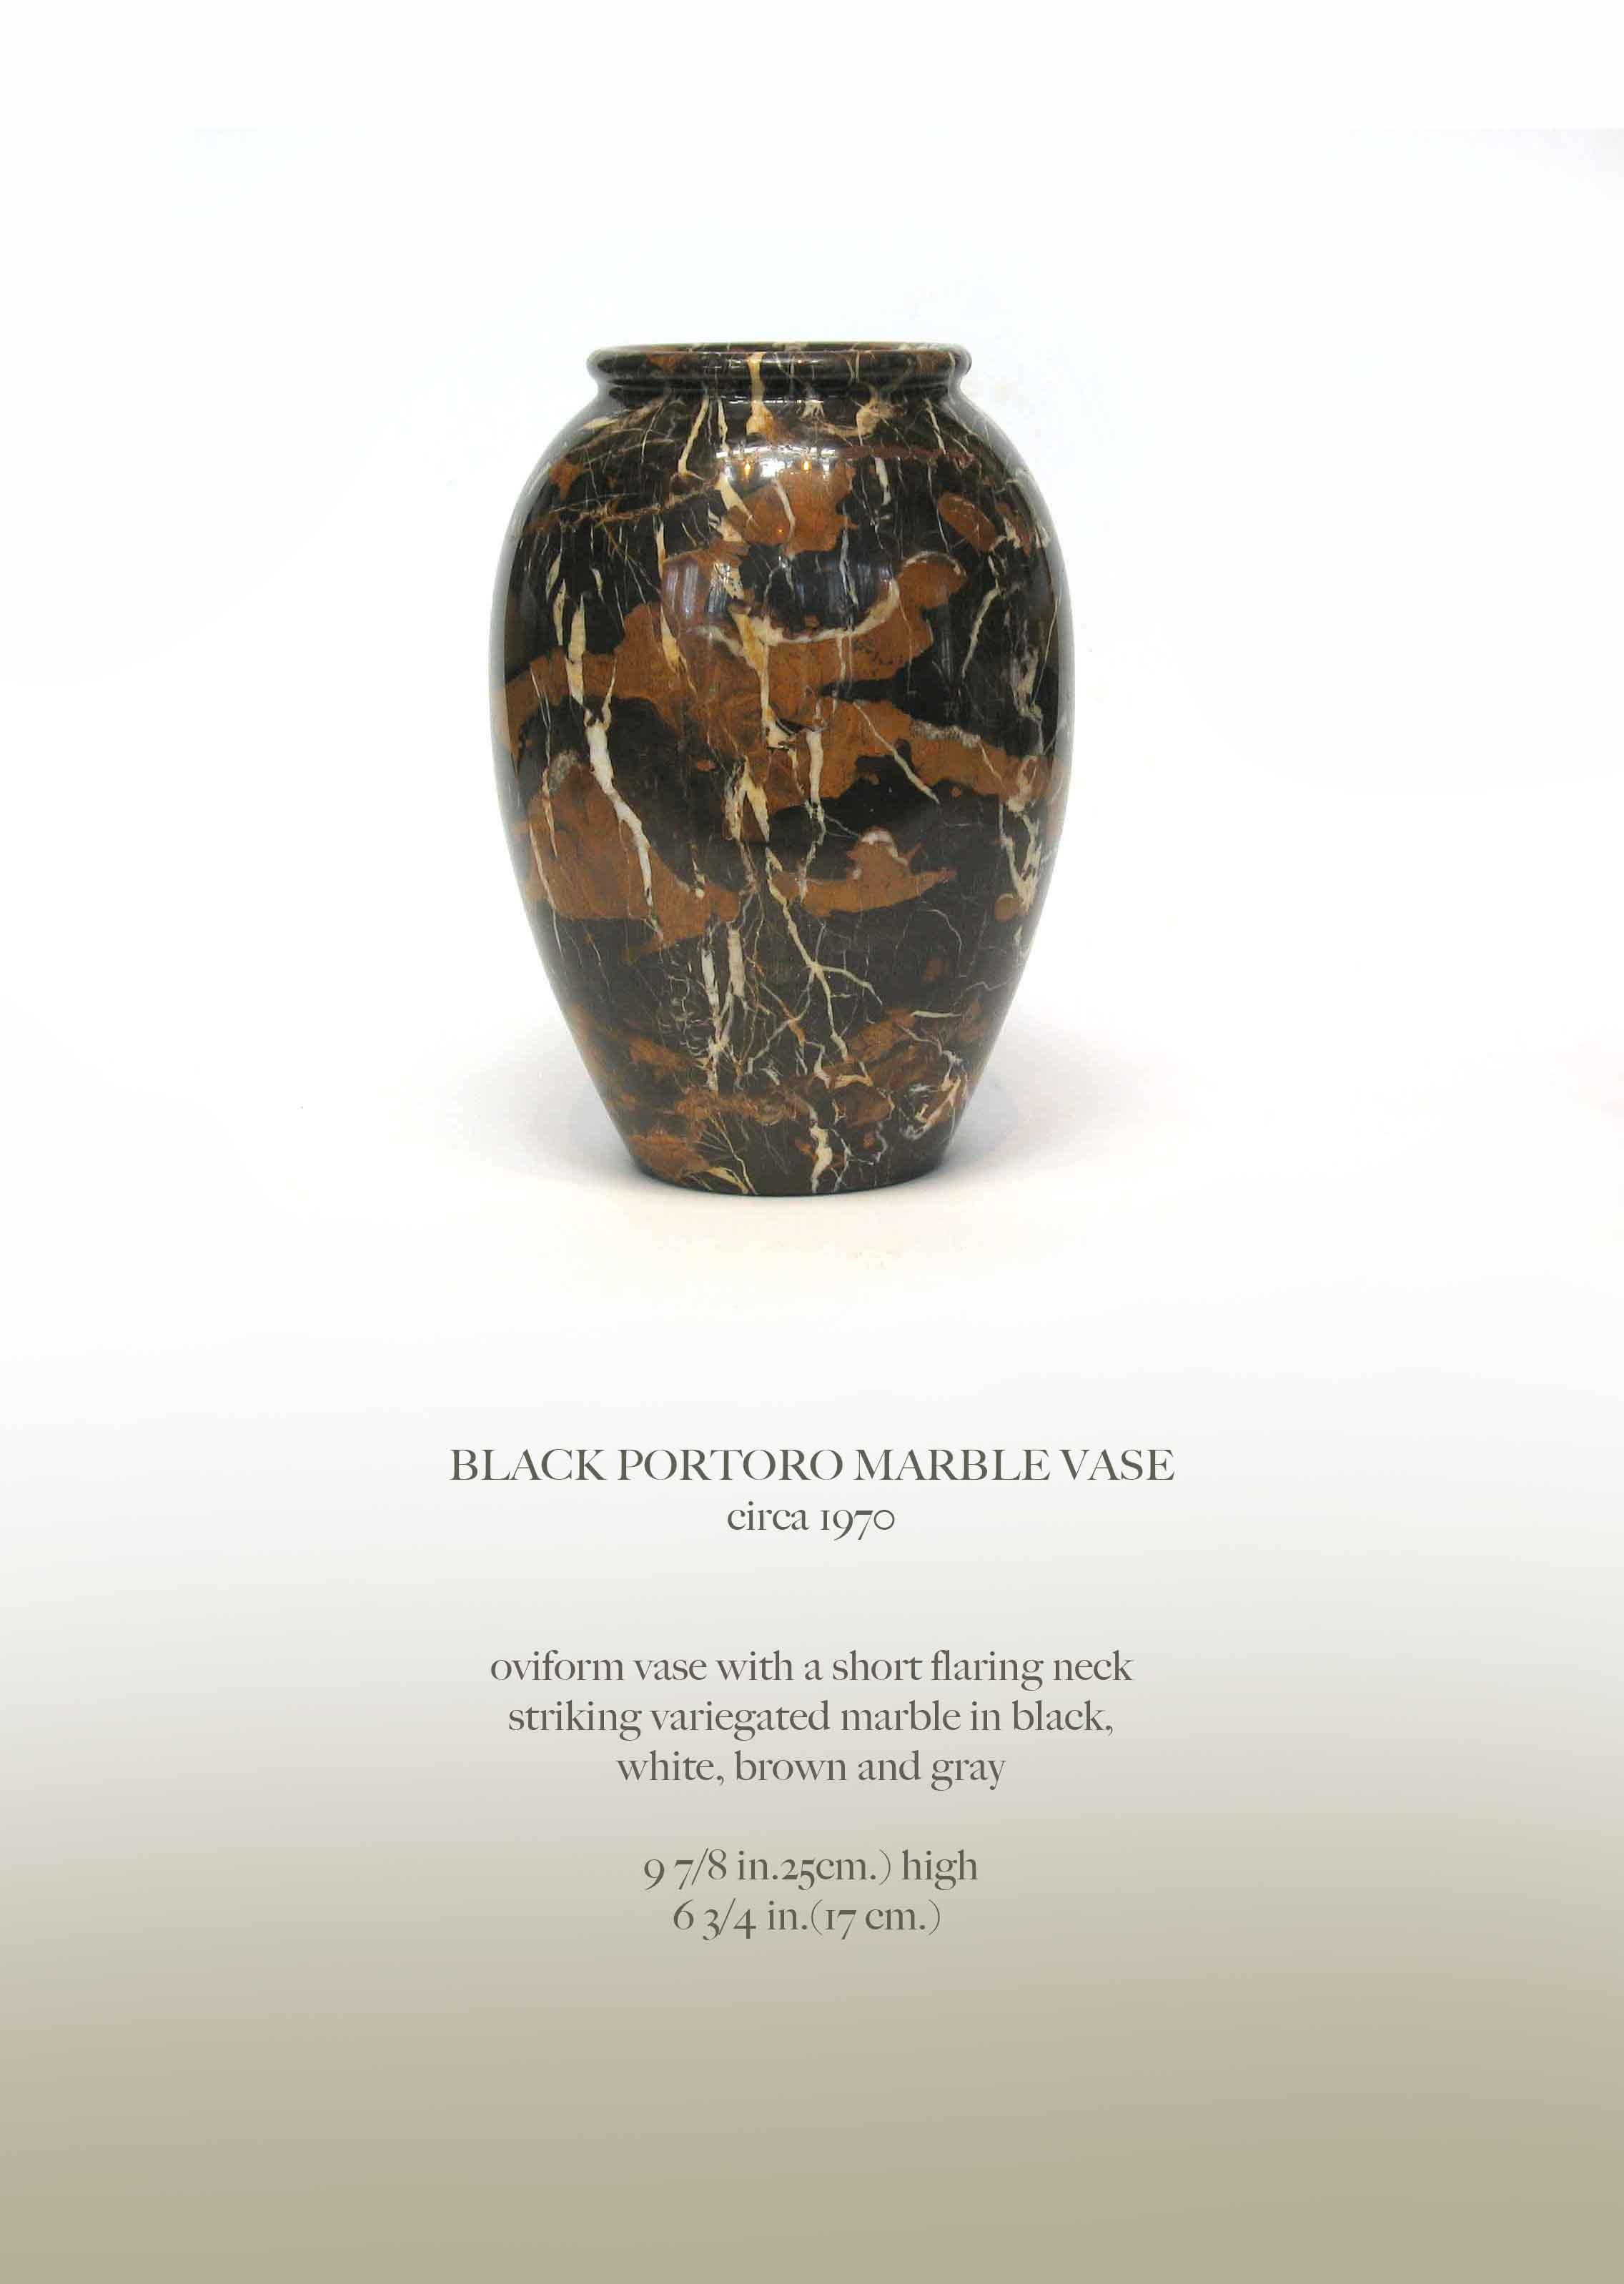 VASE EN MARBRE PORTORO NOIR
vers 1970

Vase de forme Ovide avec un court col évasé
marbre bariolé de couleur noire,
blanc, brun et gris.

9 7/8